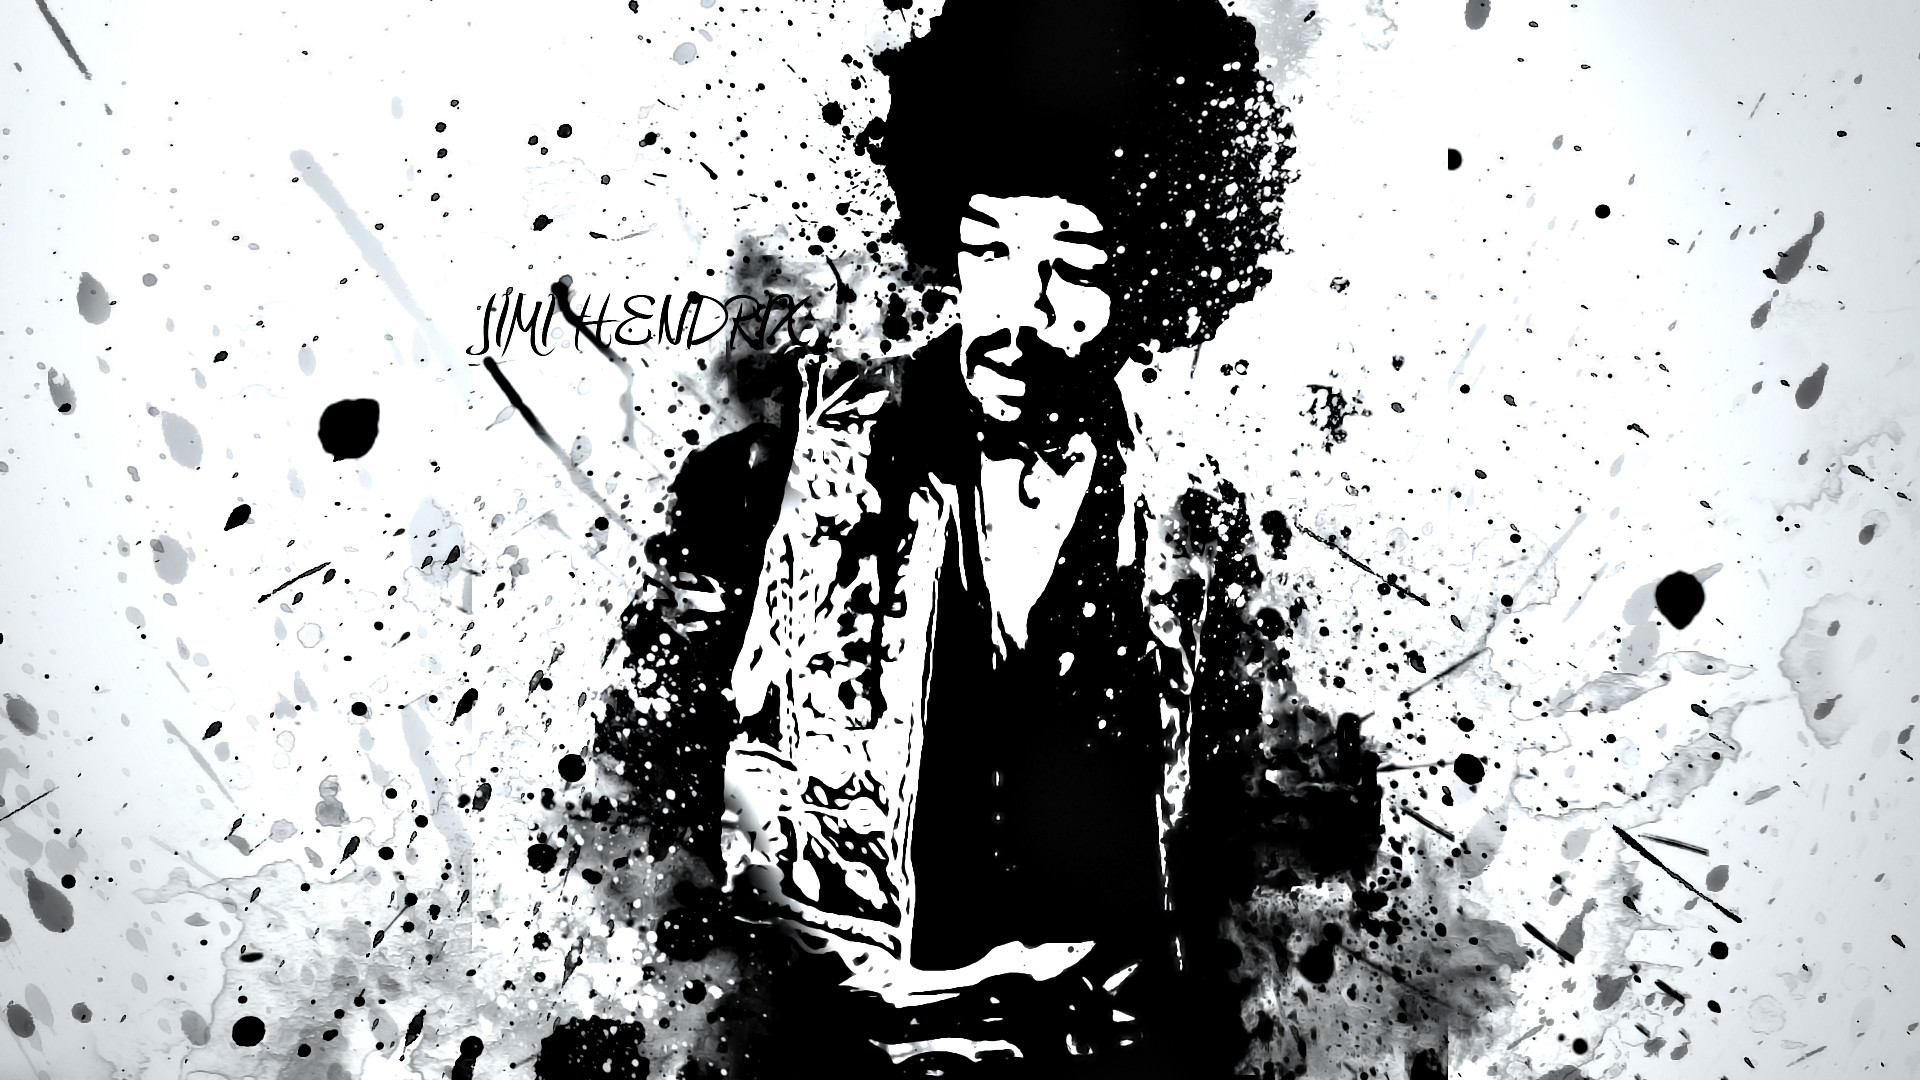 1920x1080 ... Jimi Hendrix Wallpaper 1920 x 1080 by Greev